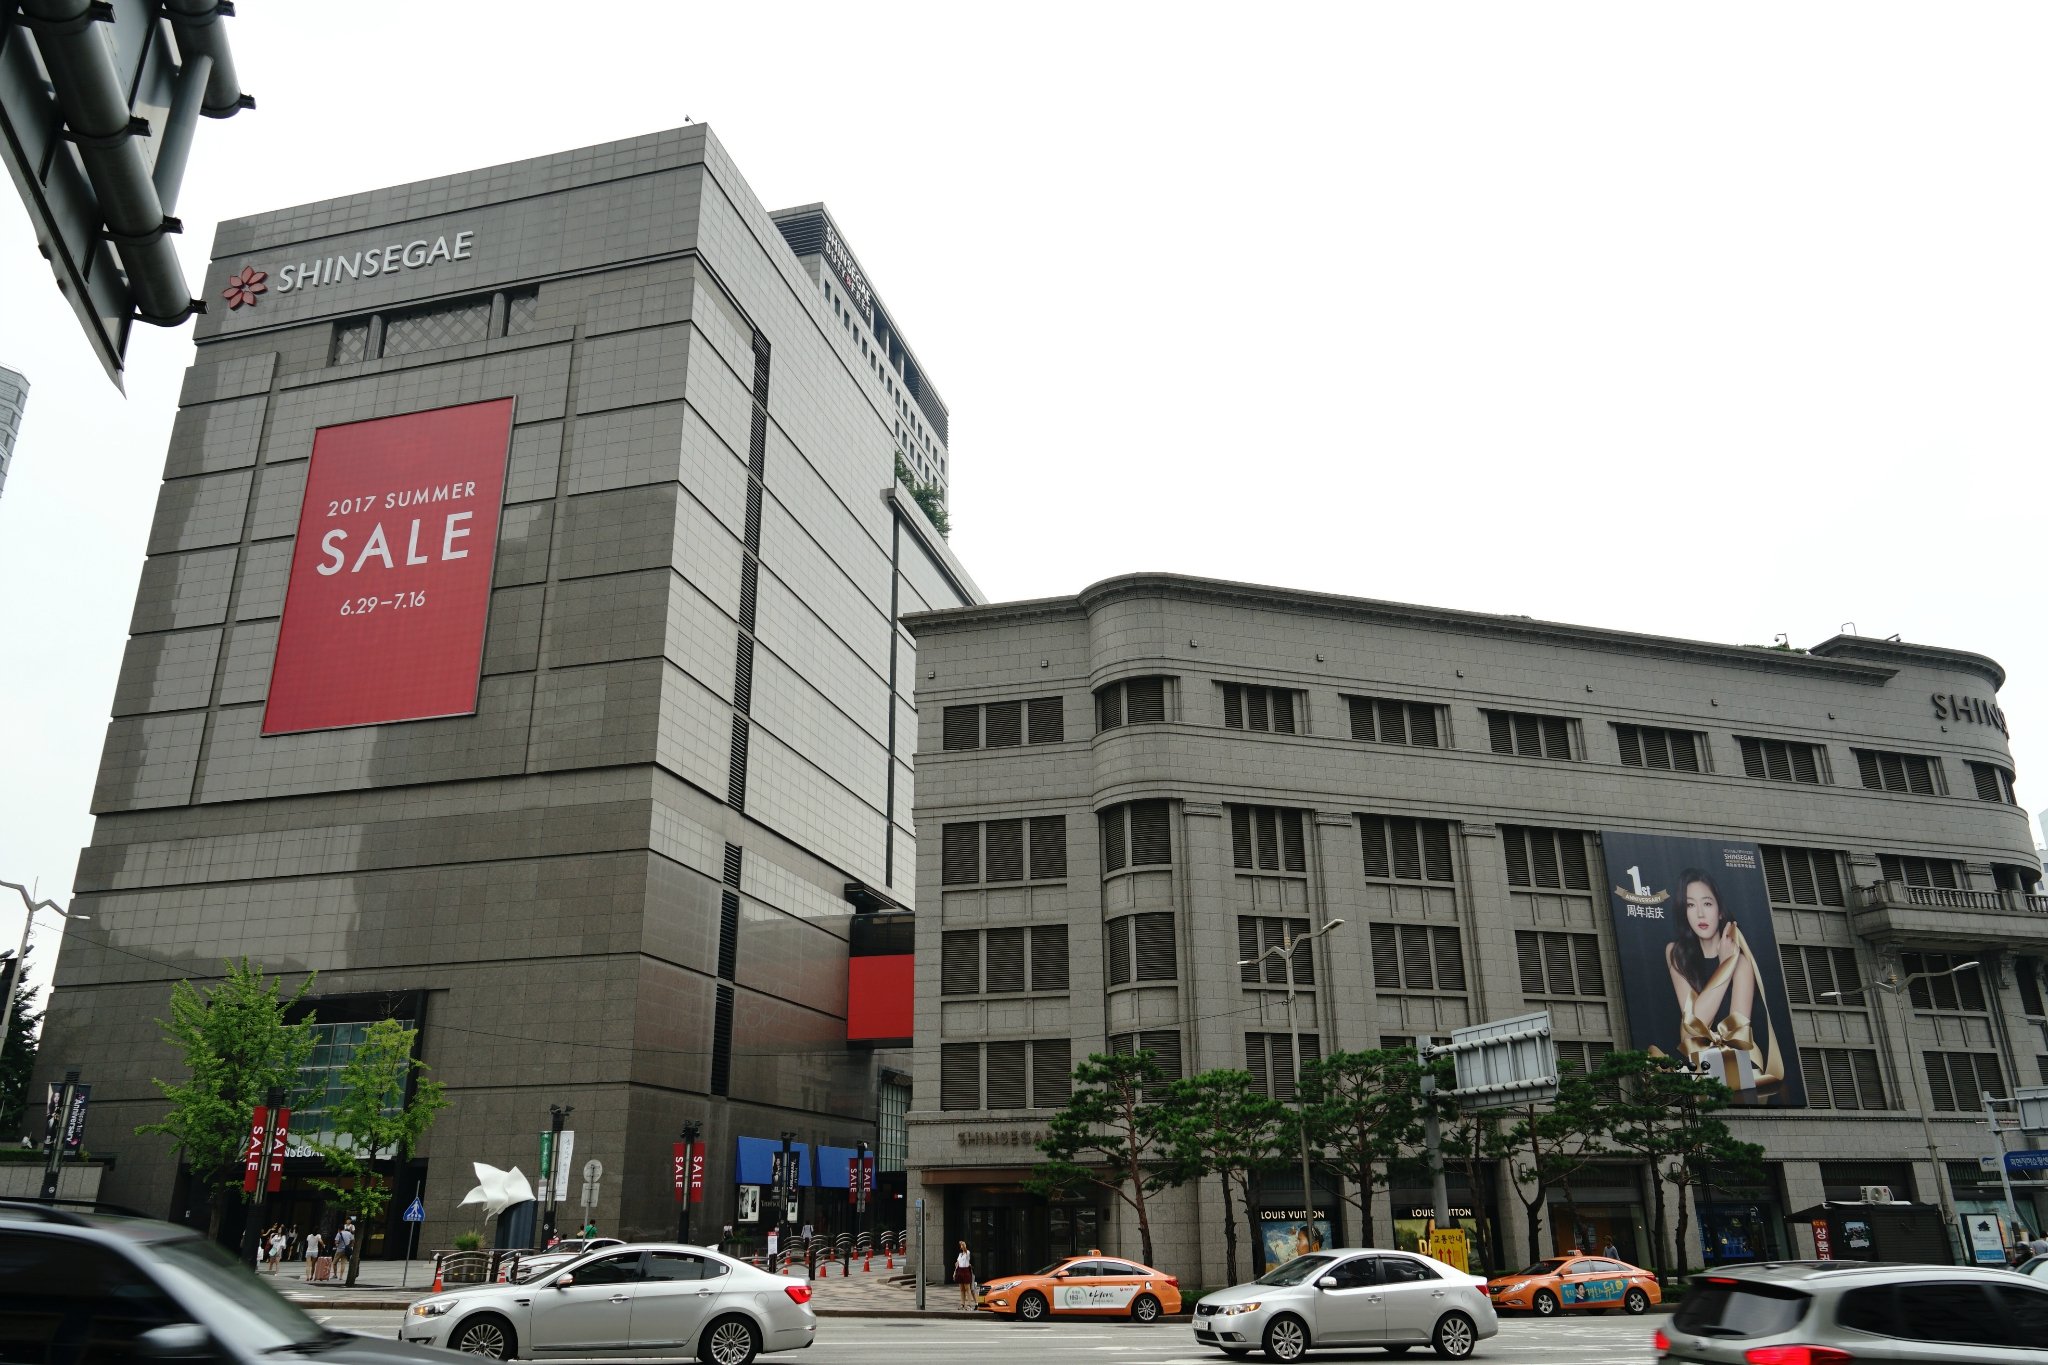 韩际新世界免税店在这一带是最新开业的免税店,所以无论是从购物环境